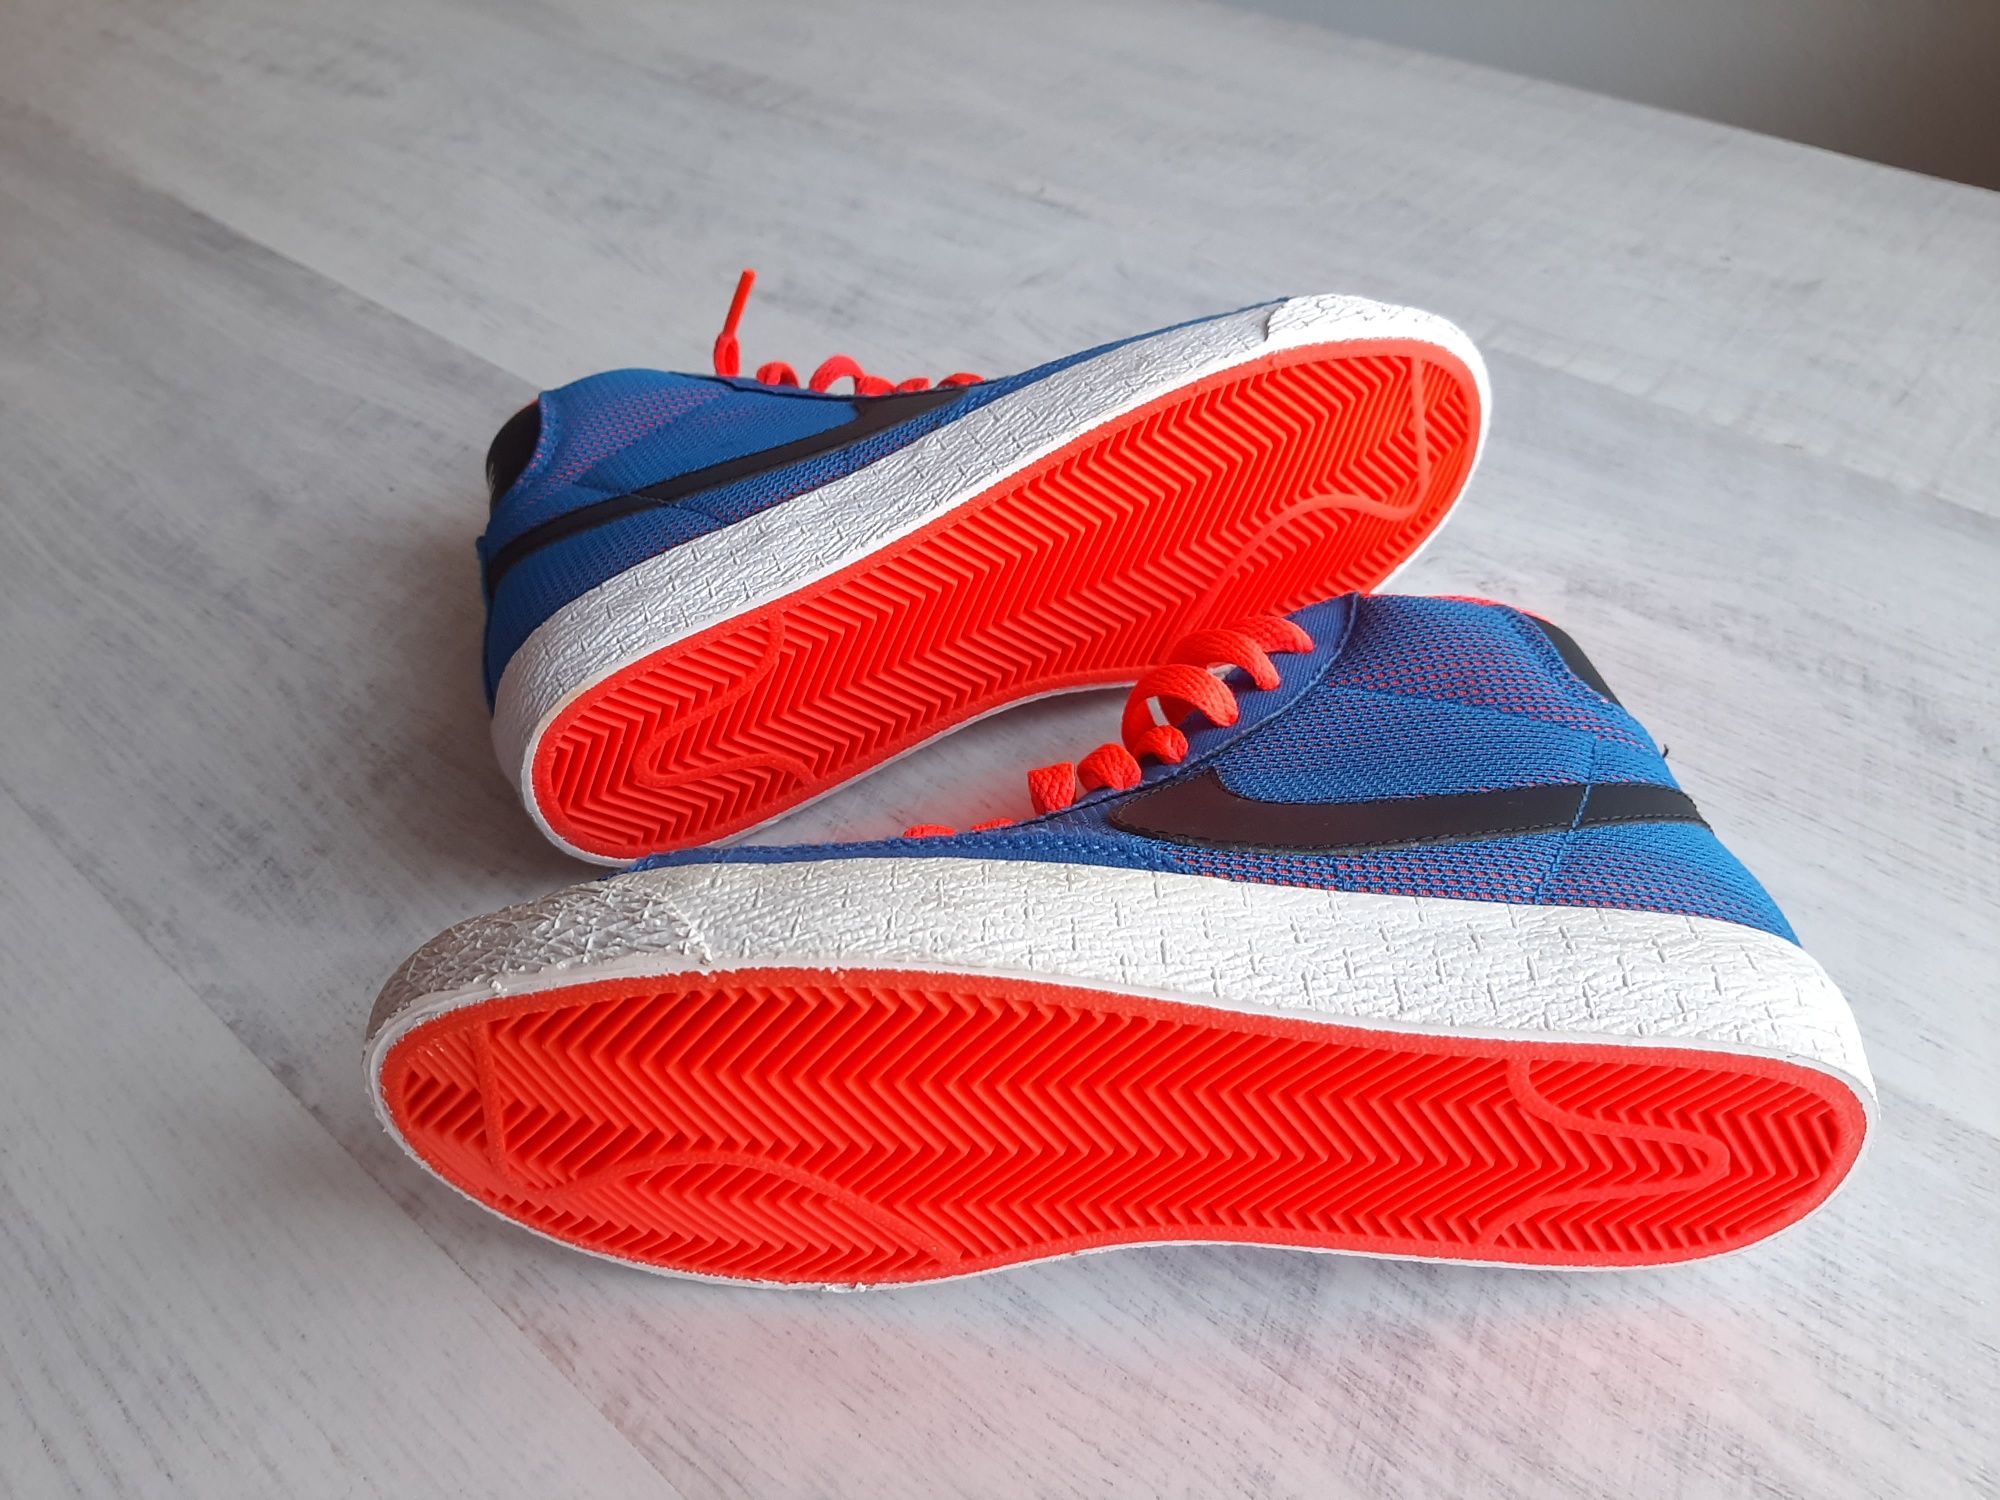 Ghete Nike Blazer Originale,De Femei,Noi,Mărimea 35,5 Albastre,Cod E47